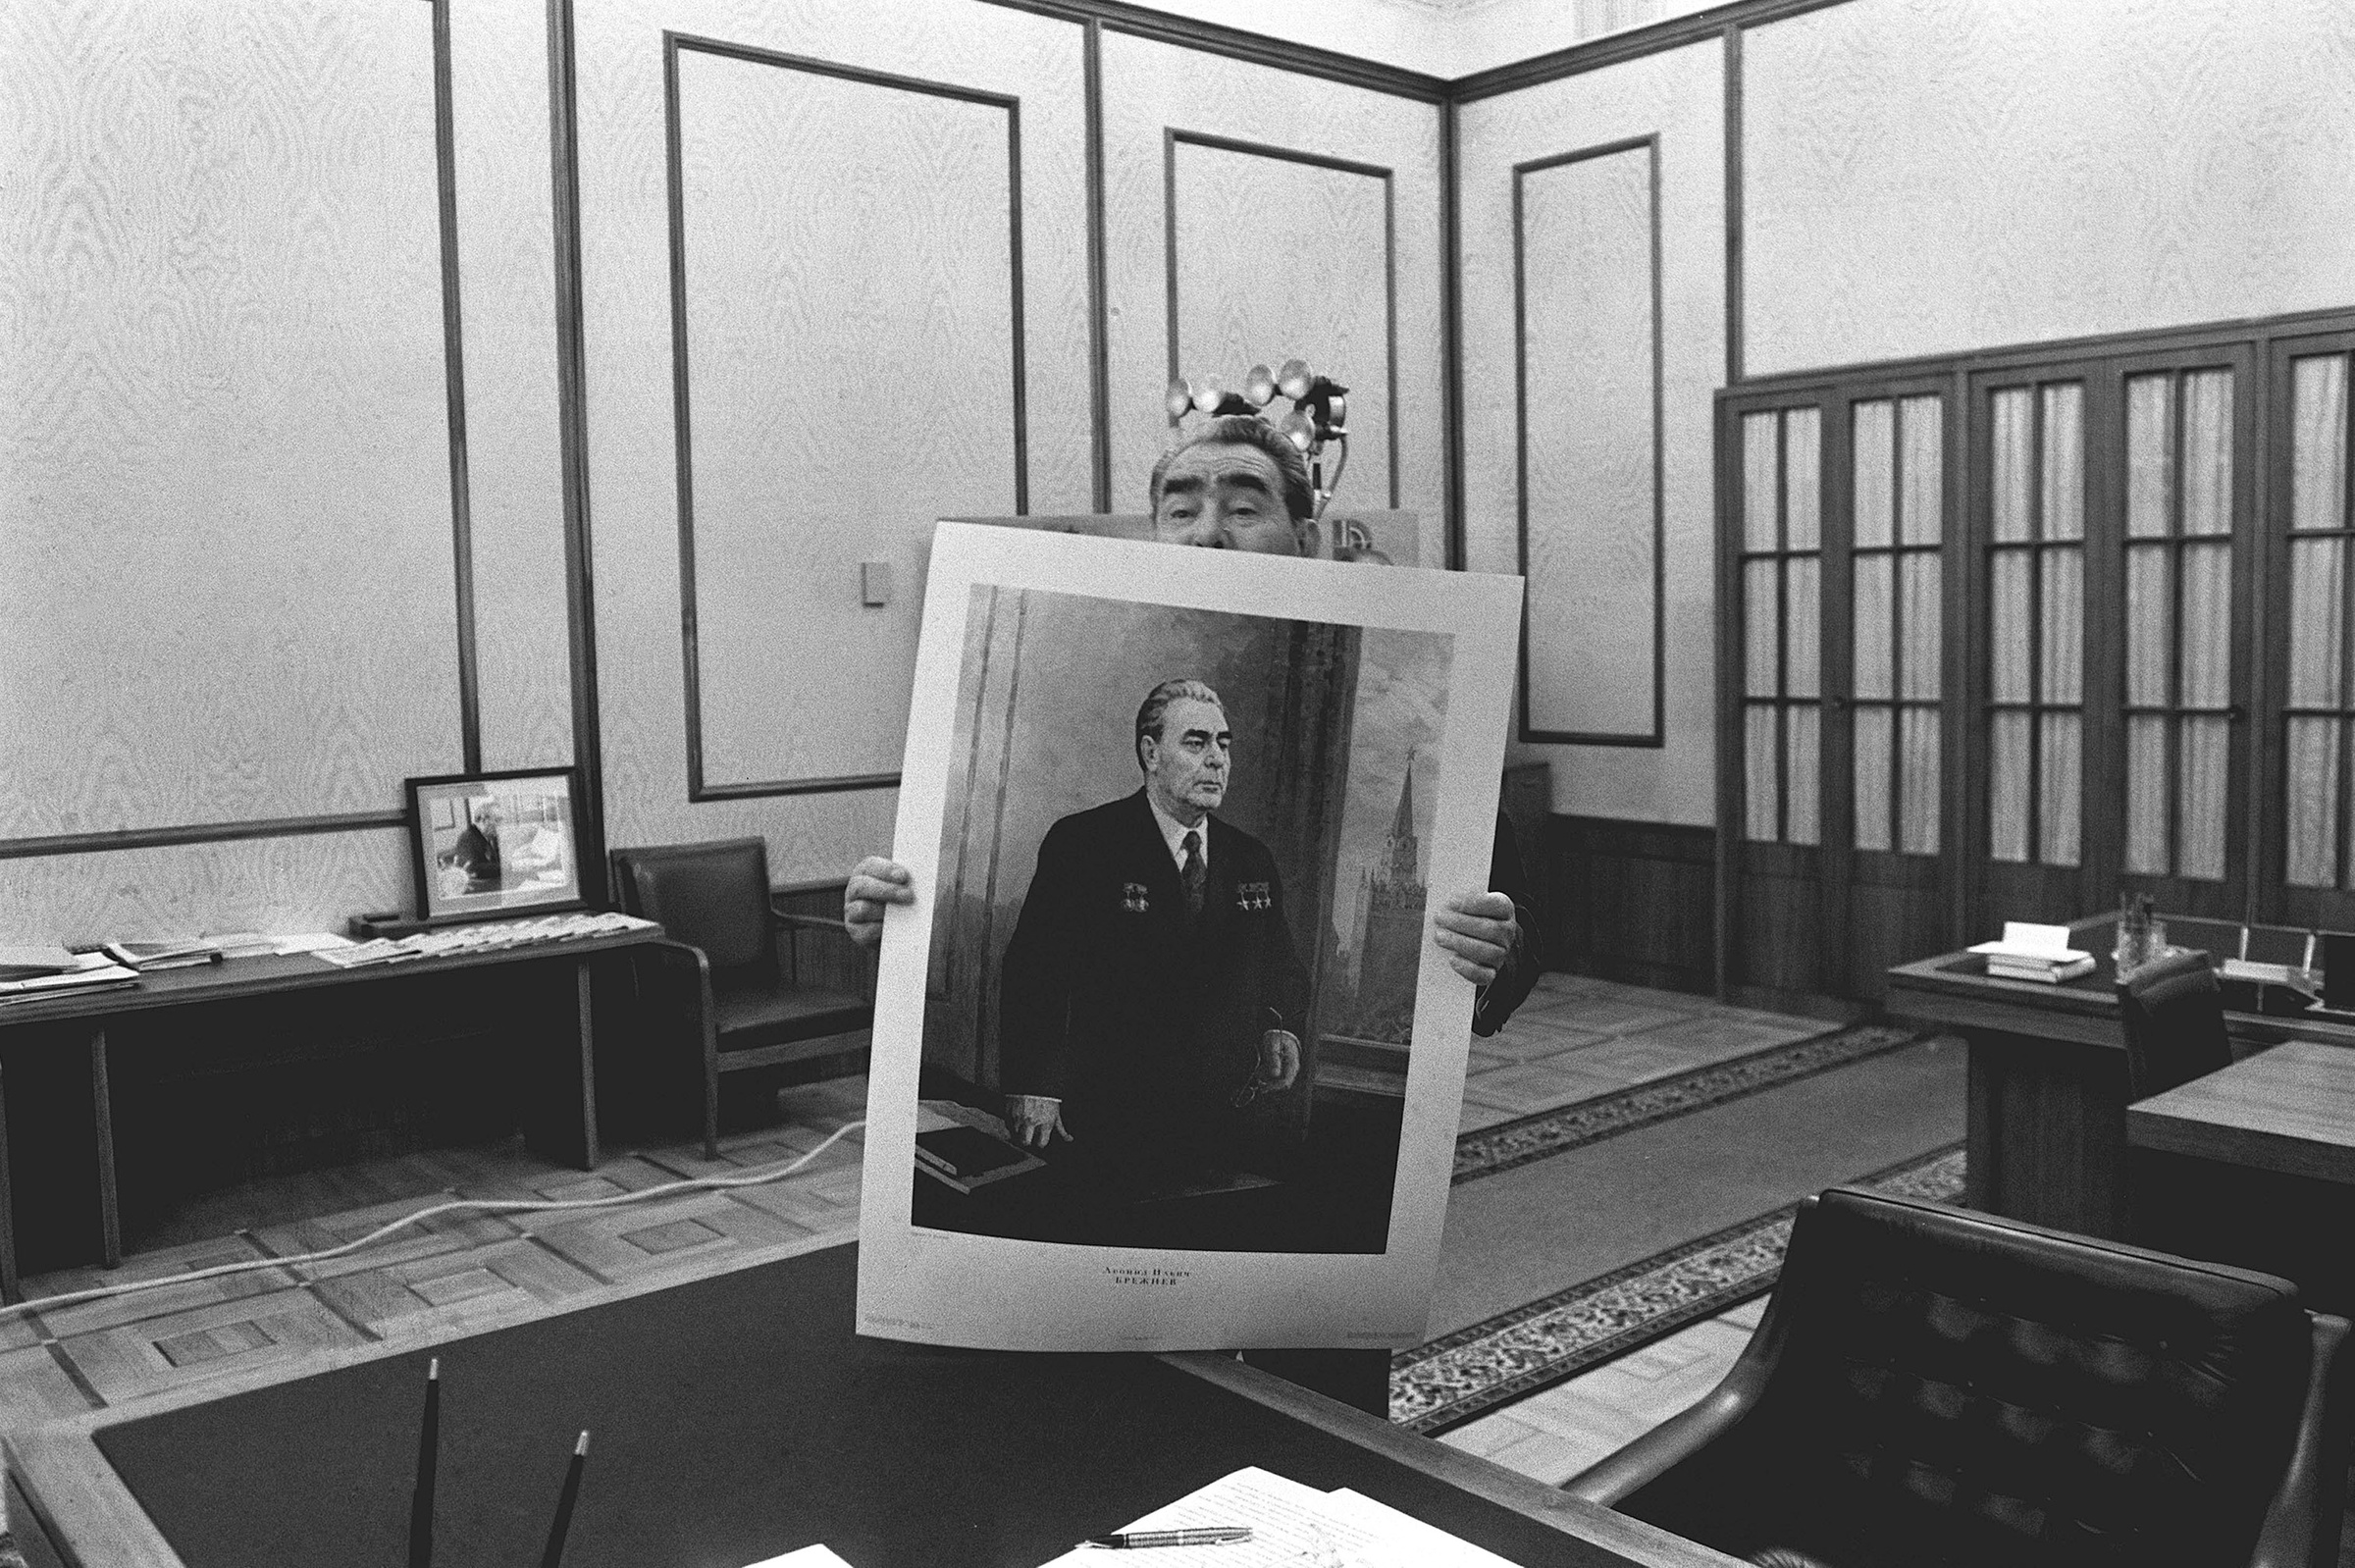  Леонид Брежнев в своём кабинете в Кремле в Москве, Россия, 30 сентября 1977 года. Фото © Getty Images / Gilbert UZAN / Gamma-Rapho